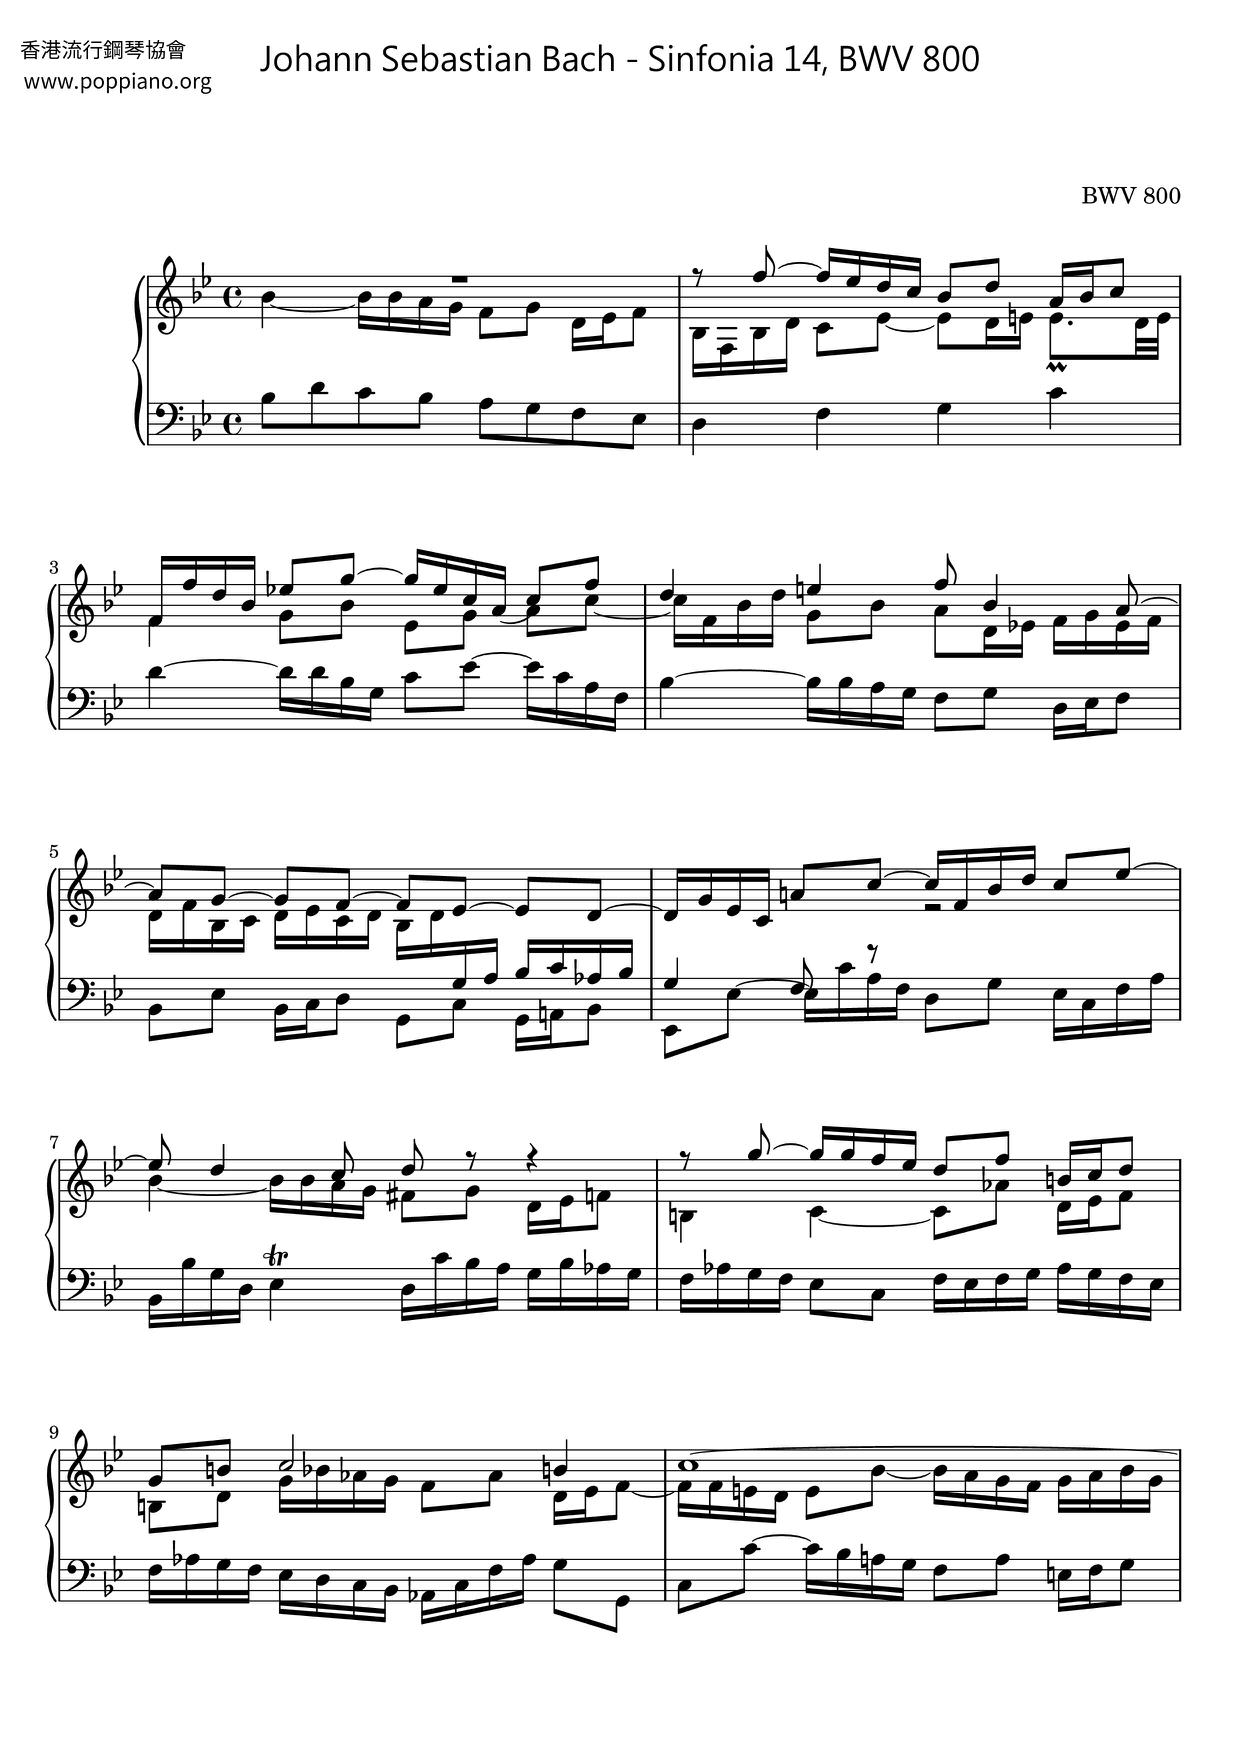 Sinfonia 14, BWV 800ピアノ譜